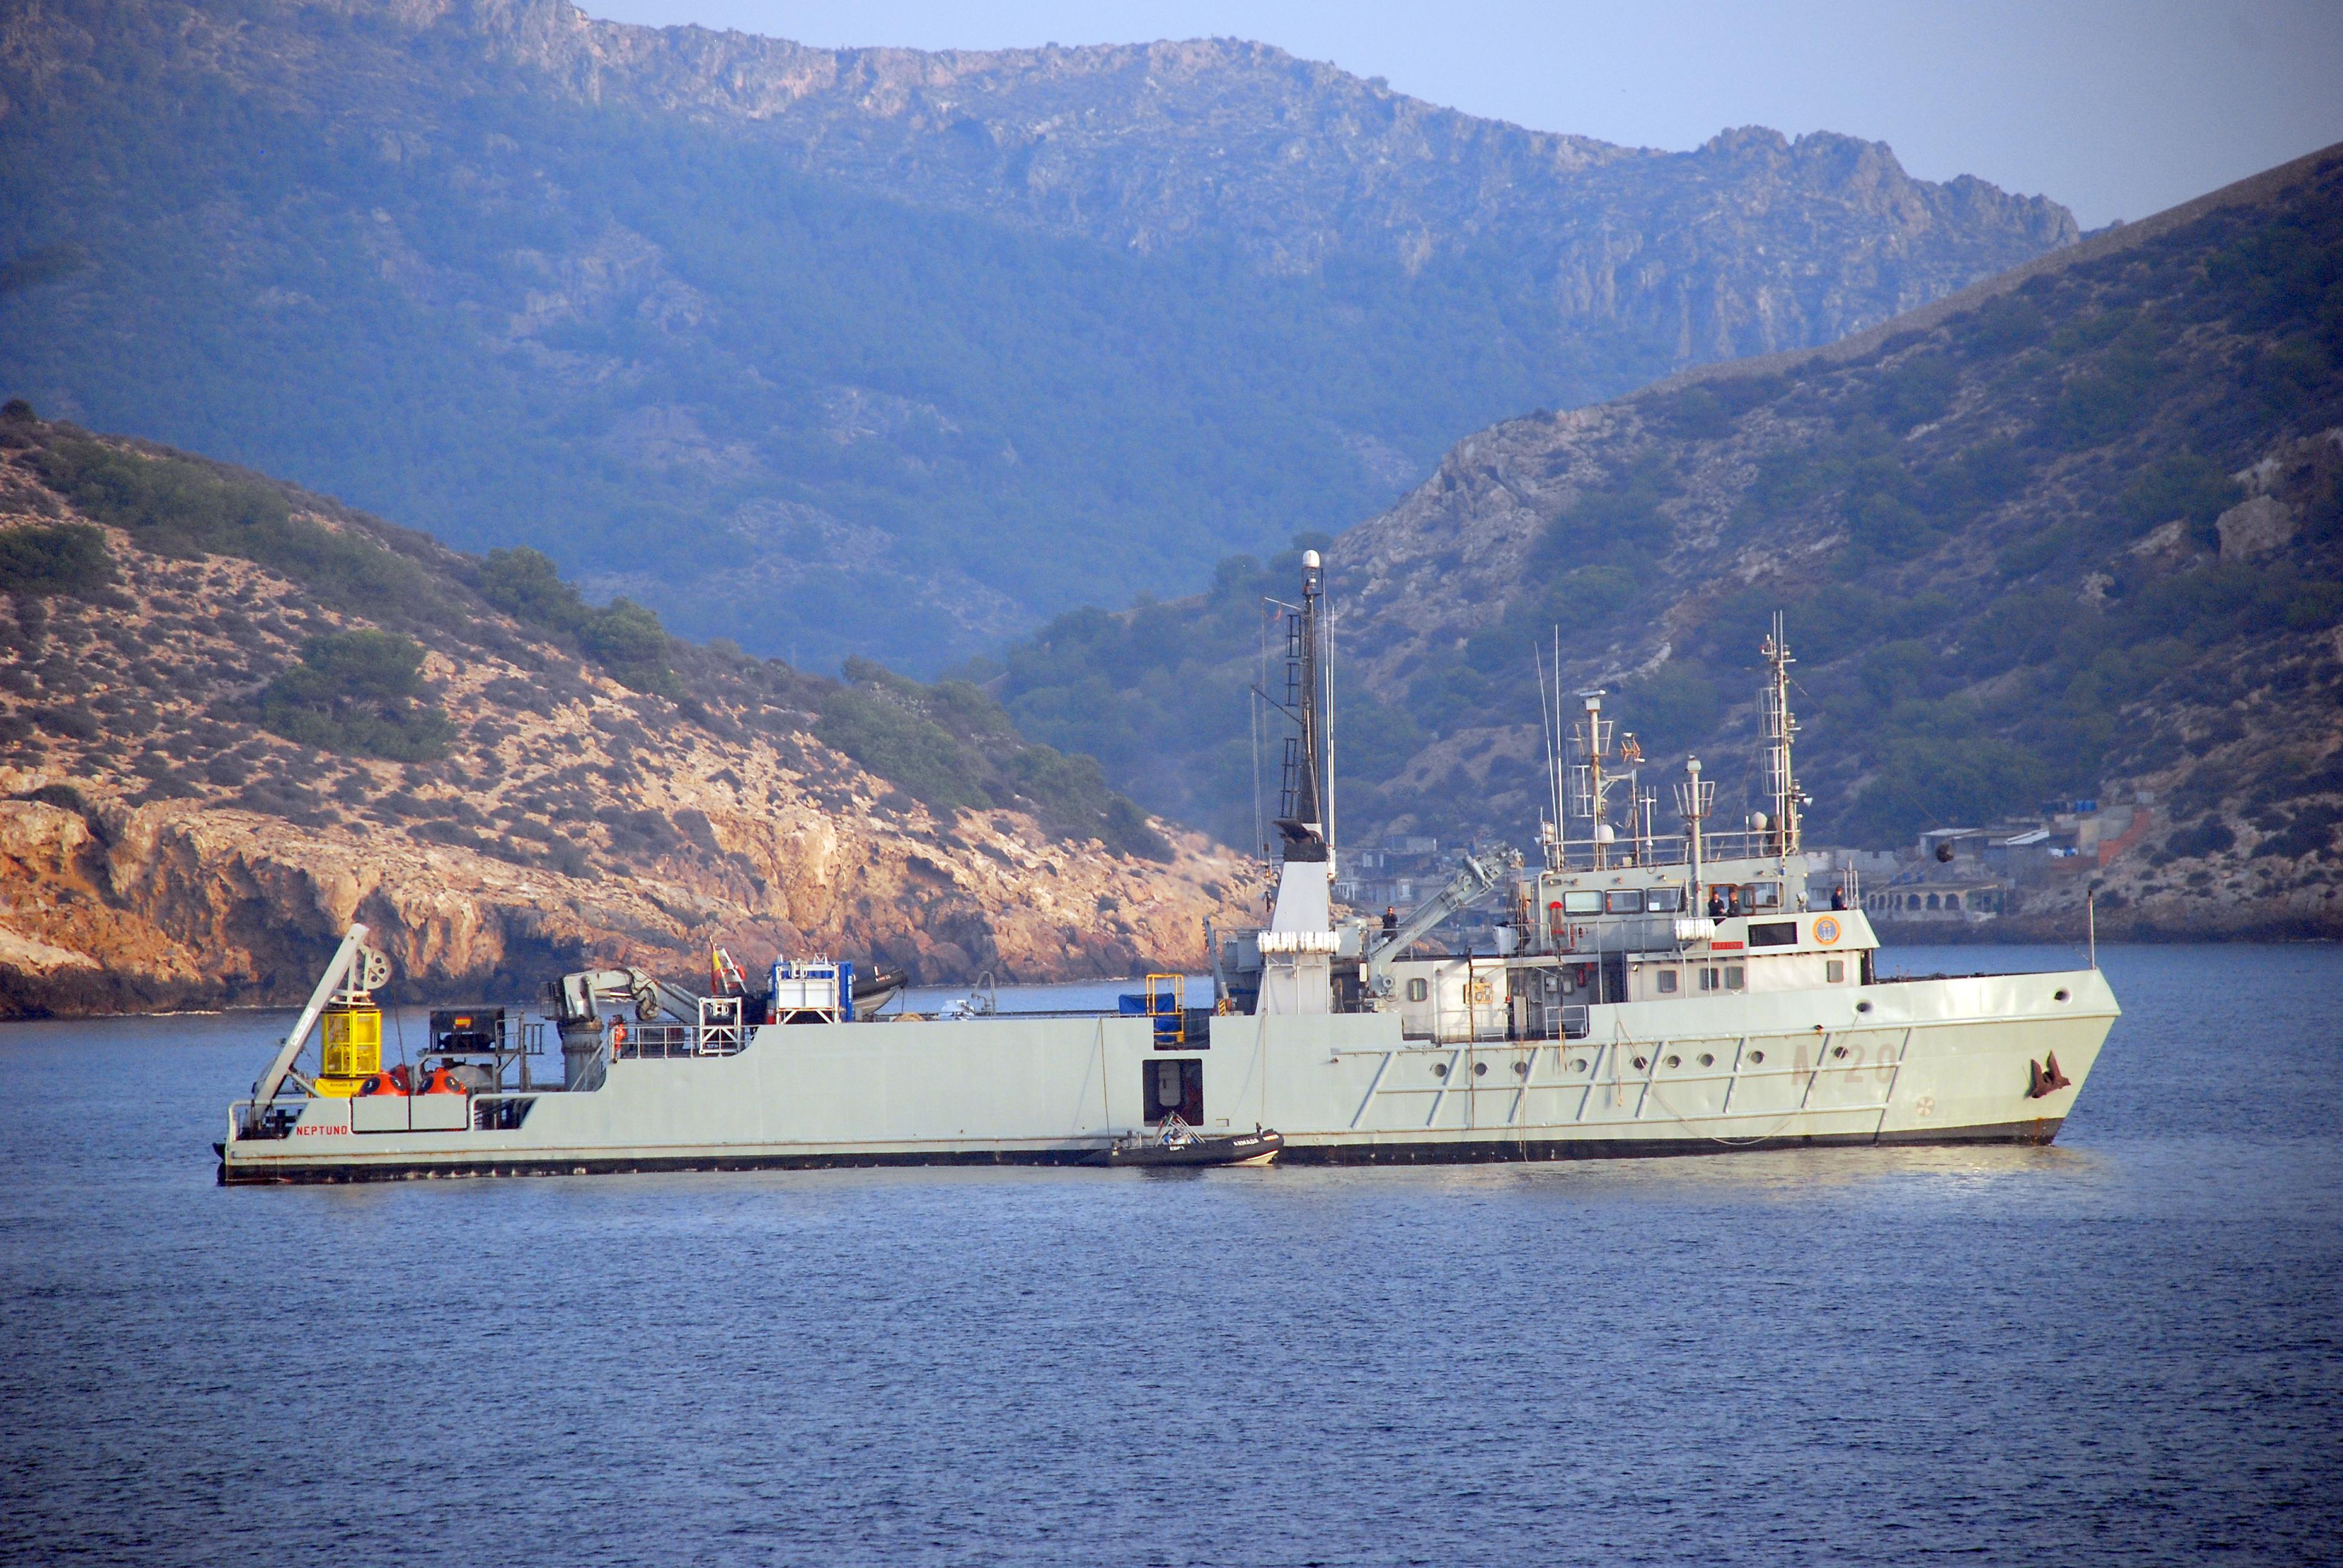 Ejercicios de salvamento y rescate de submarinos CARTAGO 2013